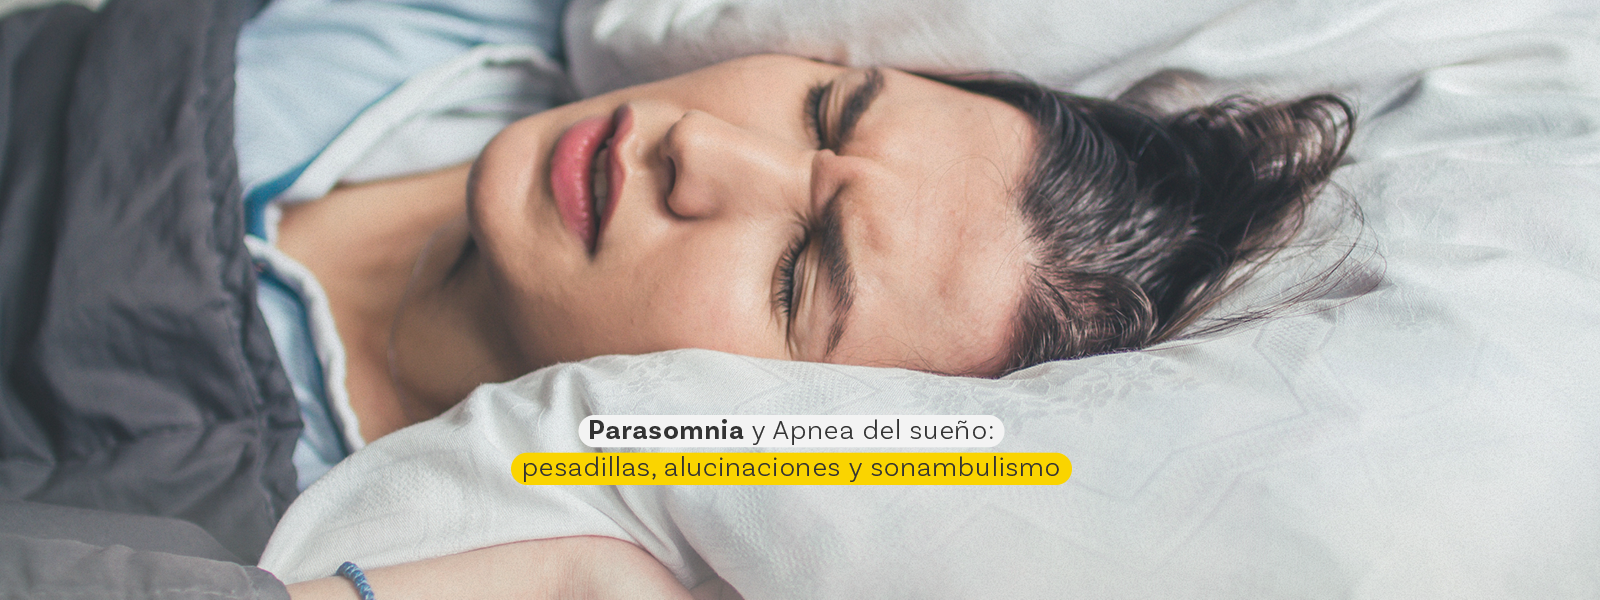 Parasomnia y Apnea del sueño: pesadillas, alucinaciones y sonambulismo